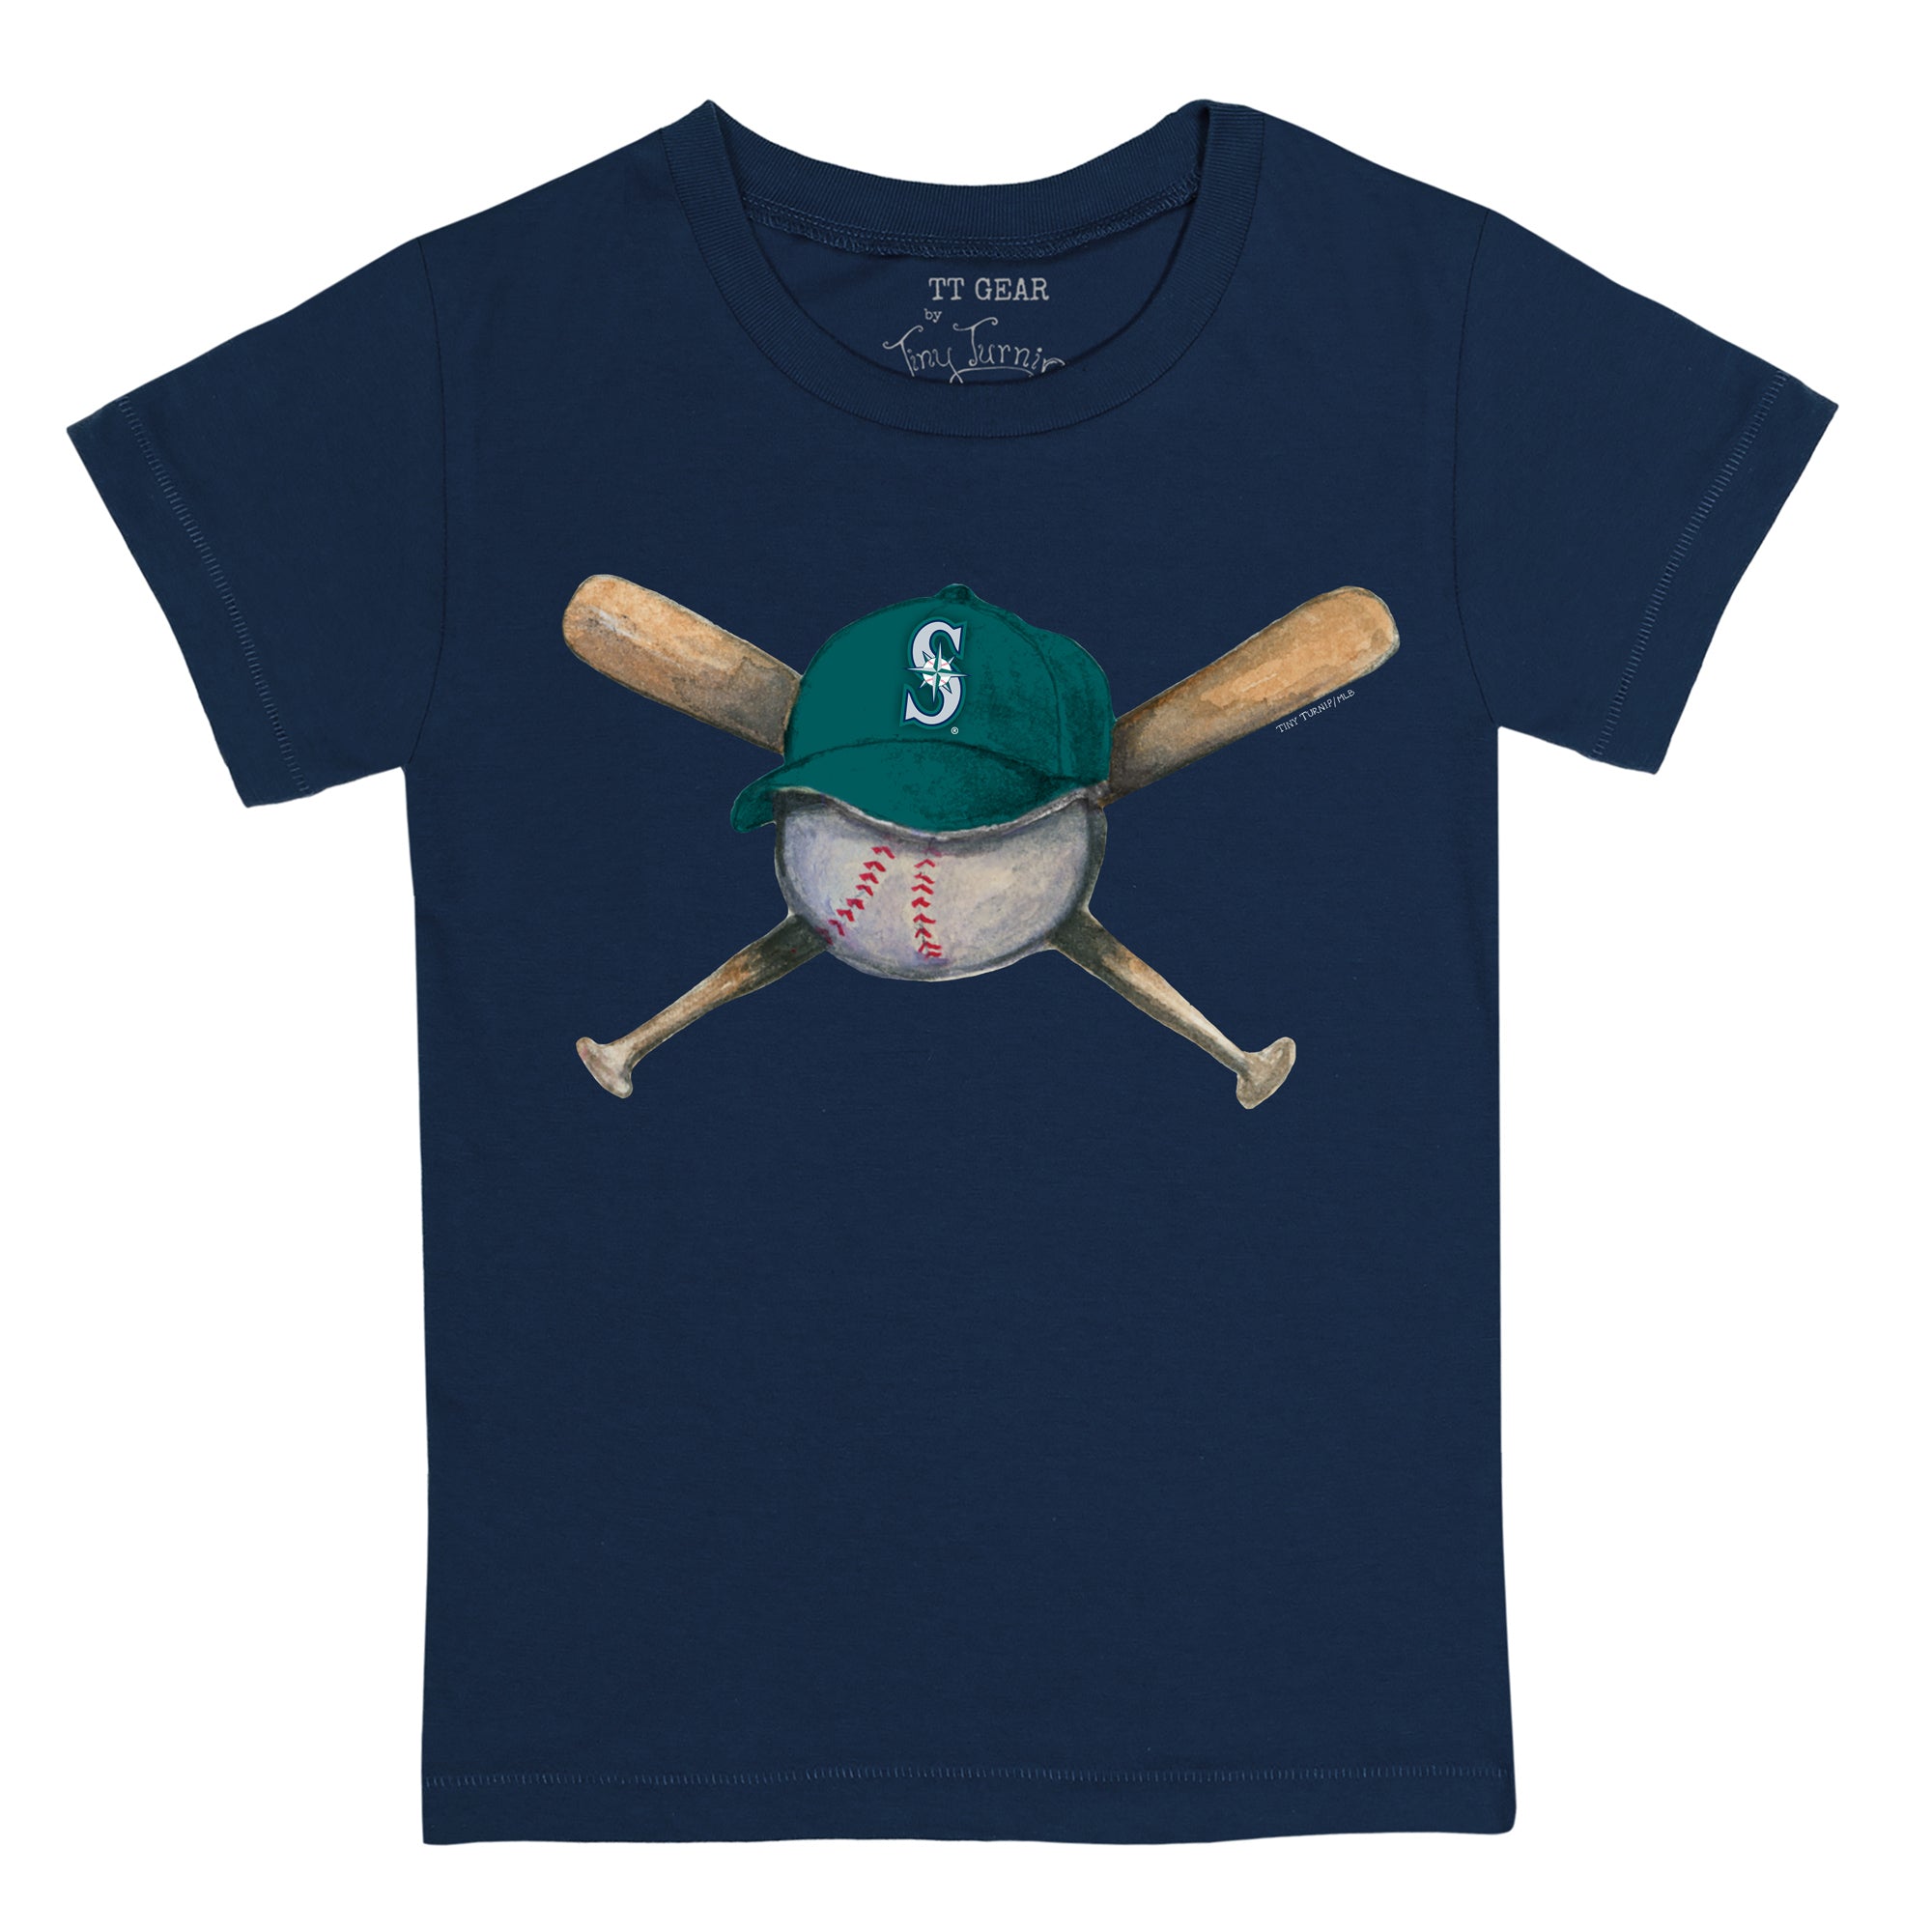 Youth Tiny Turnip White Seattle Mariners Baseball Crossbats T-Shirt Size: Small